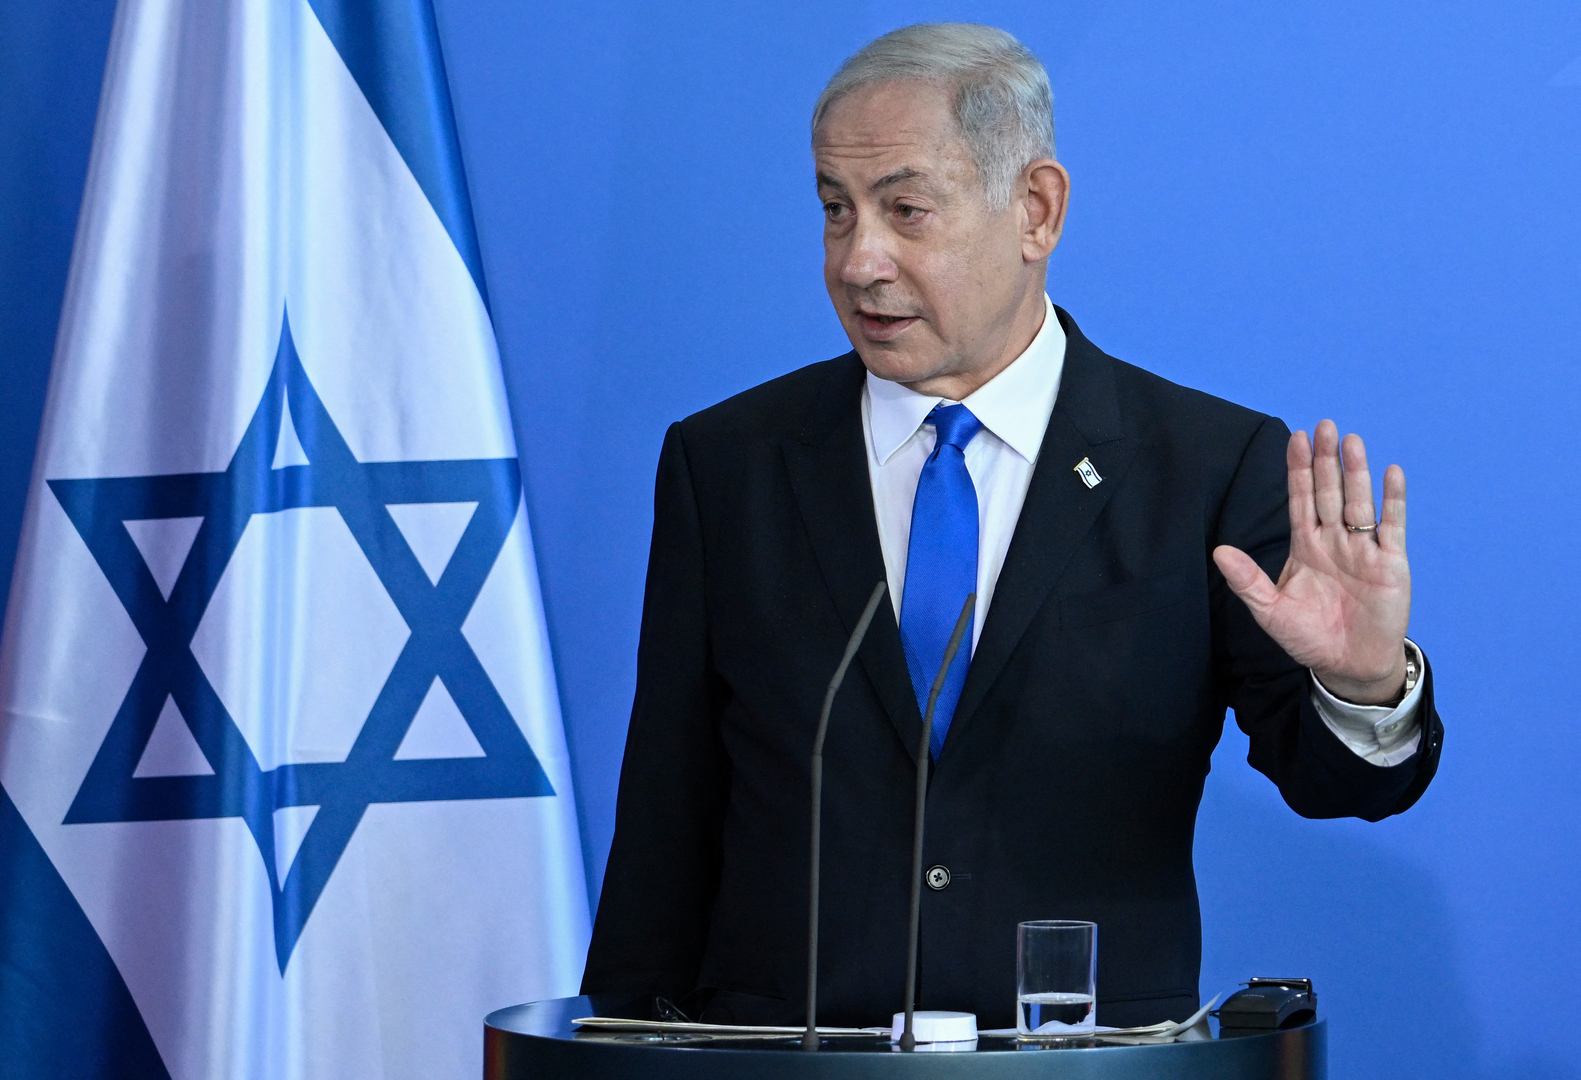 نتنياهو: المقترح التوافقي الذي قدمه الرئيس الإسرائيلي غير مقبول للتحالف الحكومي